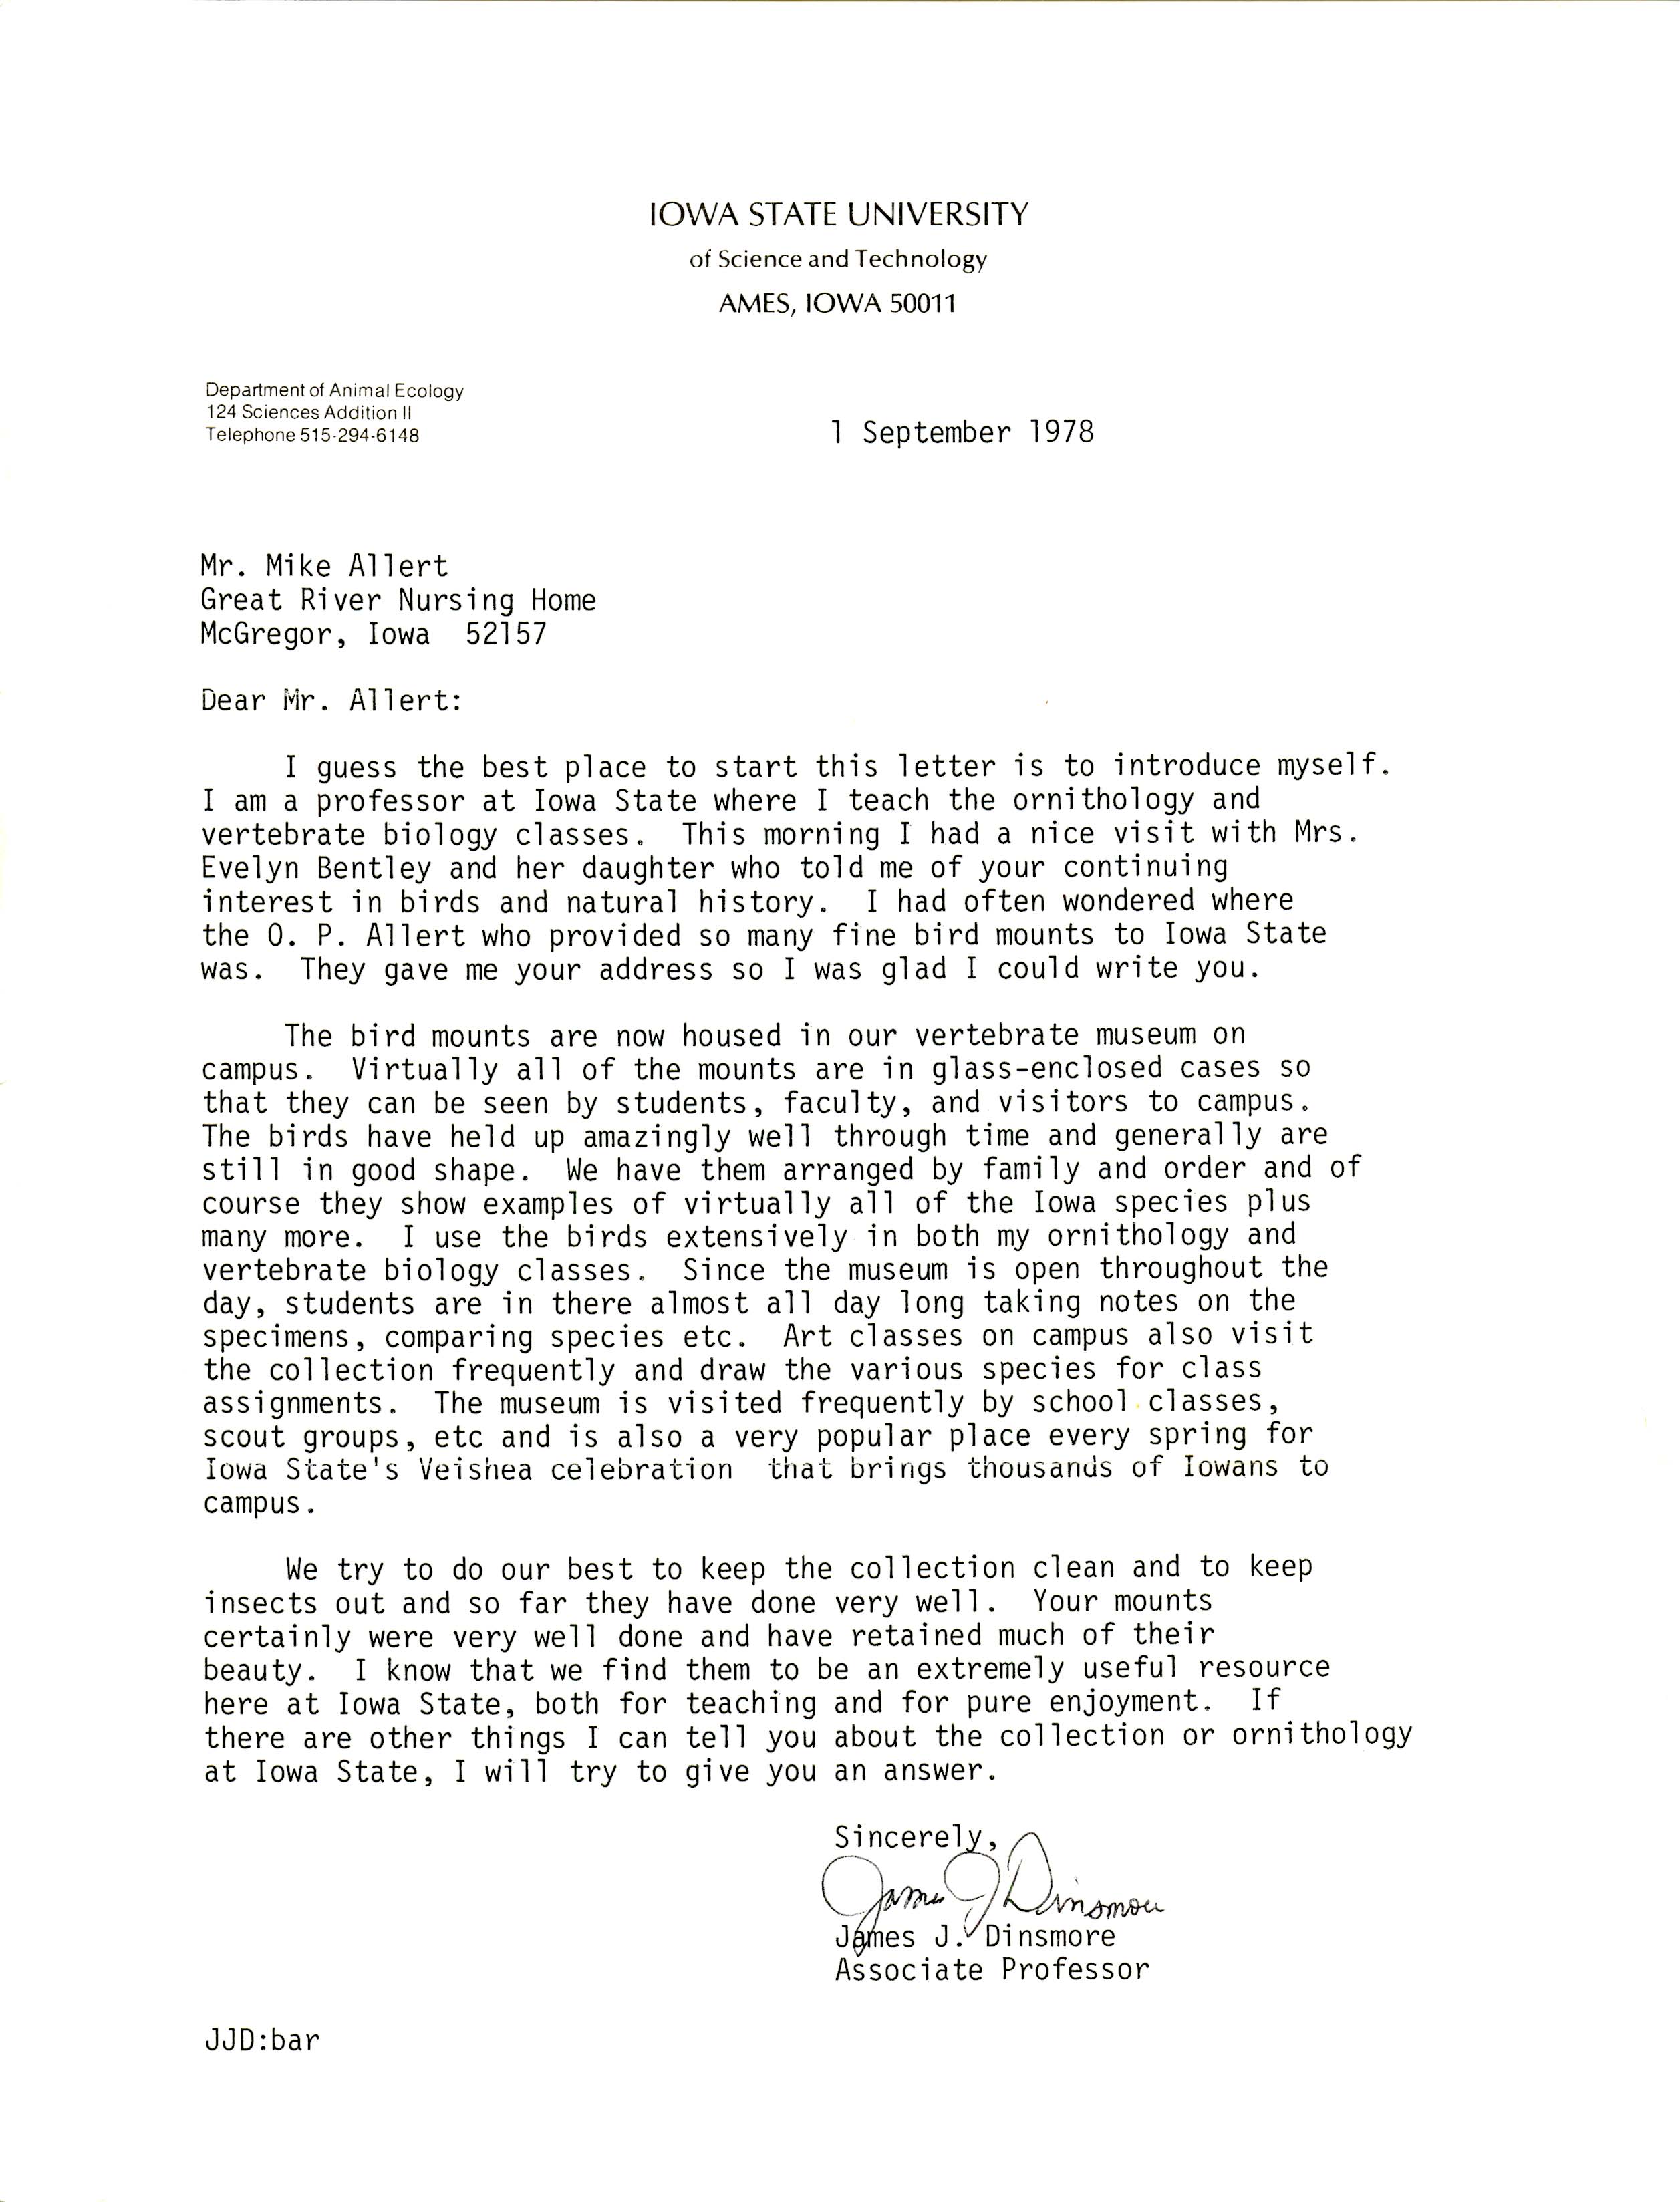 James Dinsmore letter to Oscar Allert regarding mounted bird specimens, September 1, 1978